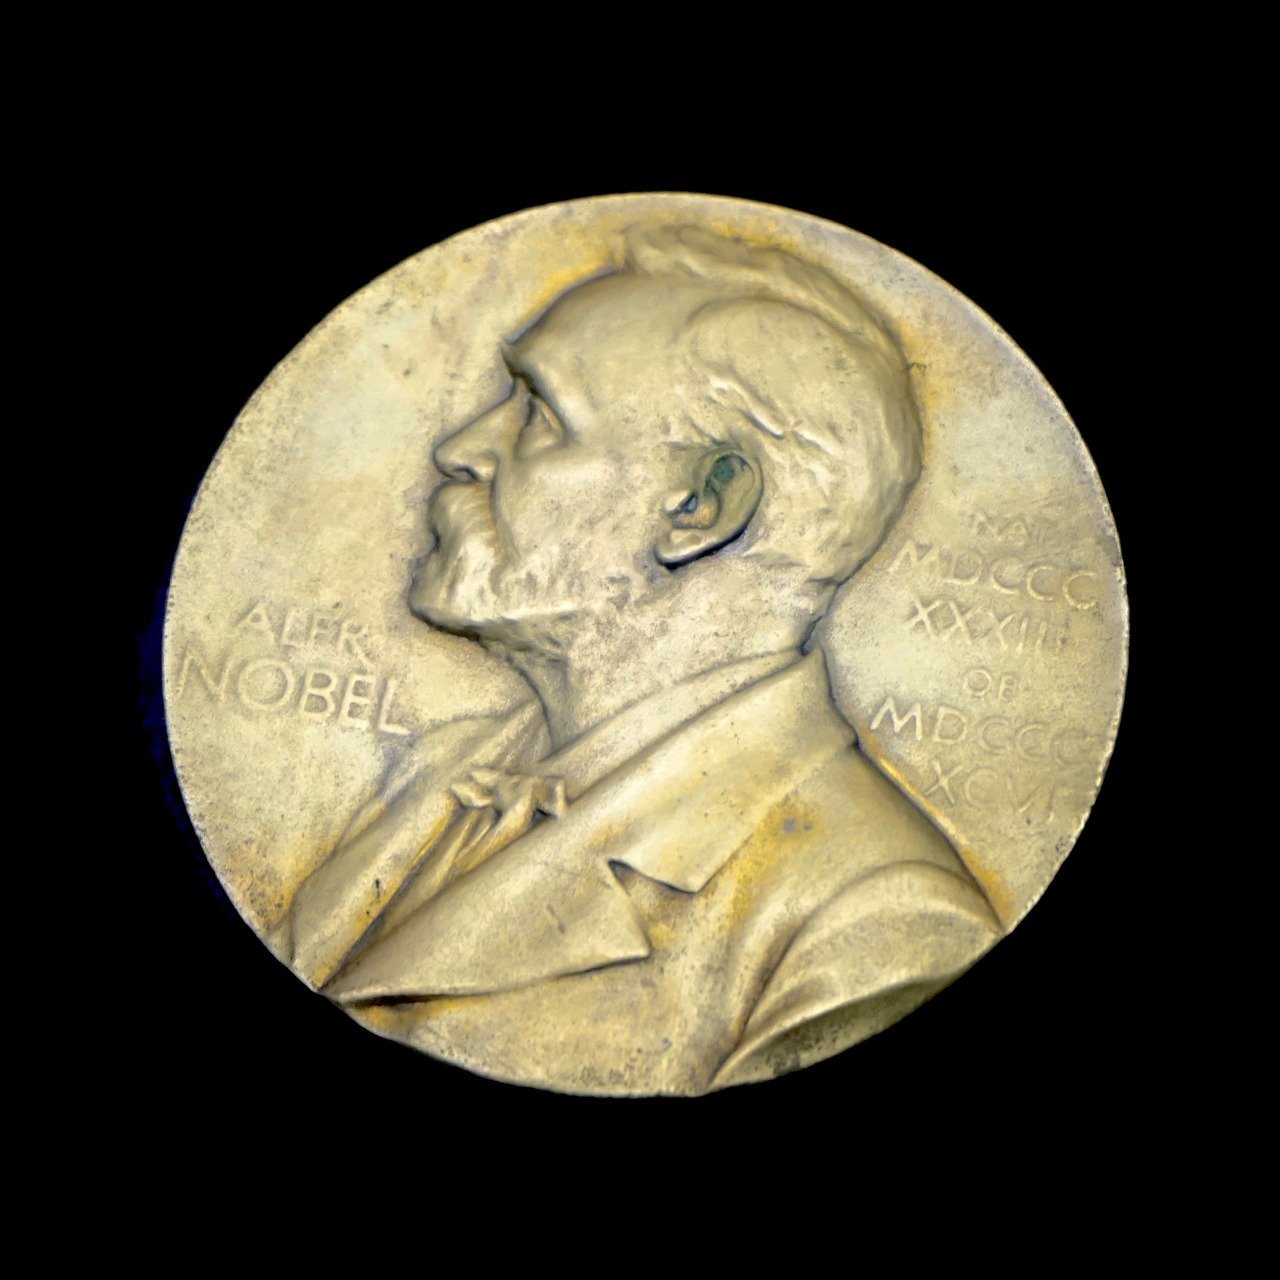 ノーベル賞メダルの素材は純金 重さや賞金額も確認してみた 森羅万象 Scope